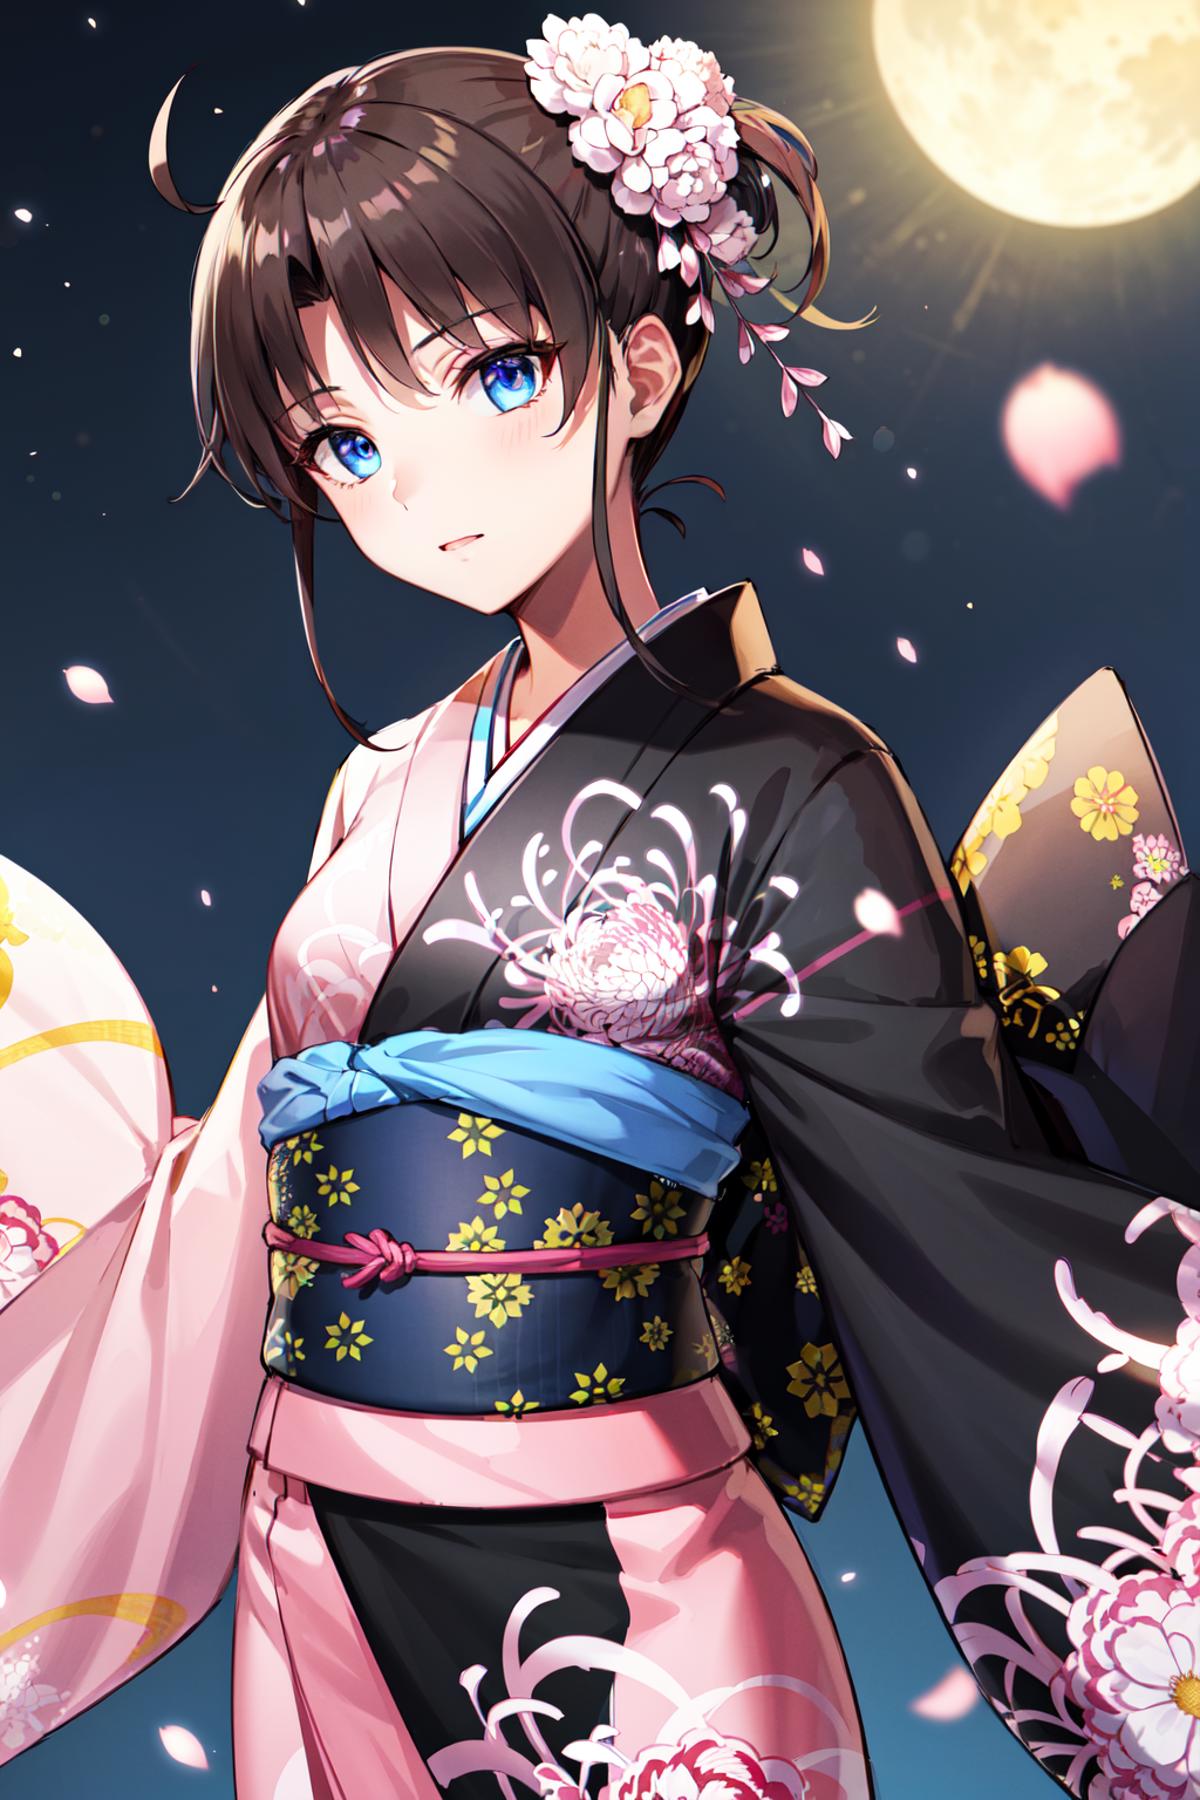 Ryougi Shiki 両儀式 / Kara No Kyoukai & Fate/Grand Order image by h_madoka